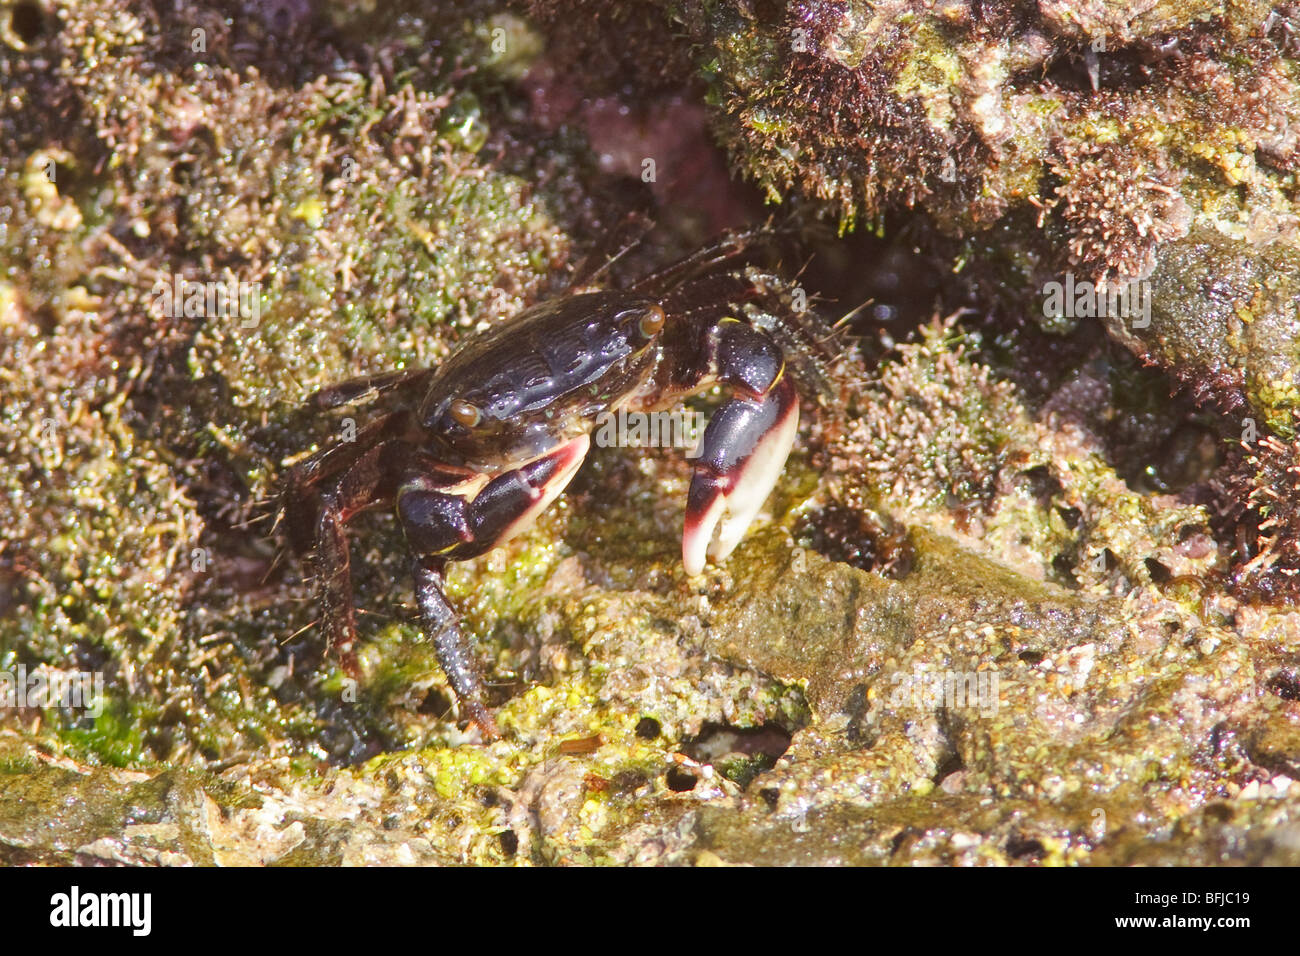 A crab in a rock outcropping off the coast of Ecuador Stock Photo